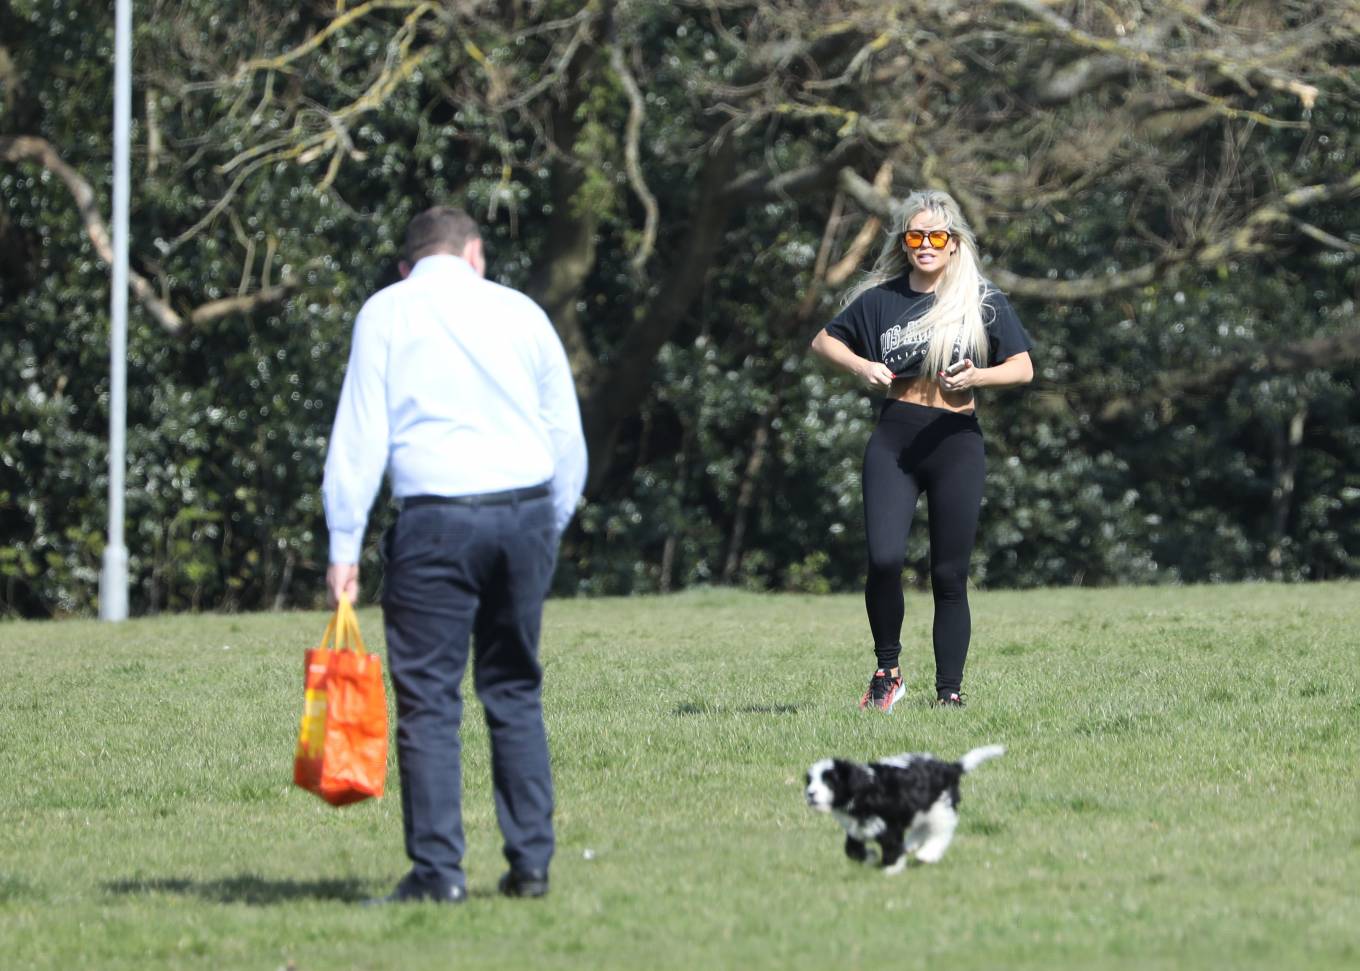 Bianca Gascoigne 2022 : Bianca Gascoigne – Seen in a local park with her new puppy Panda in Essex-09